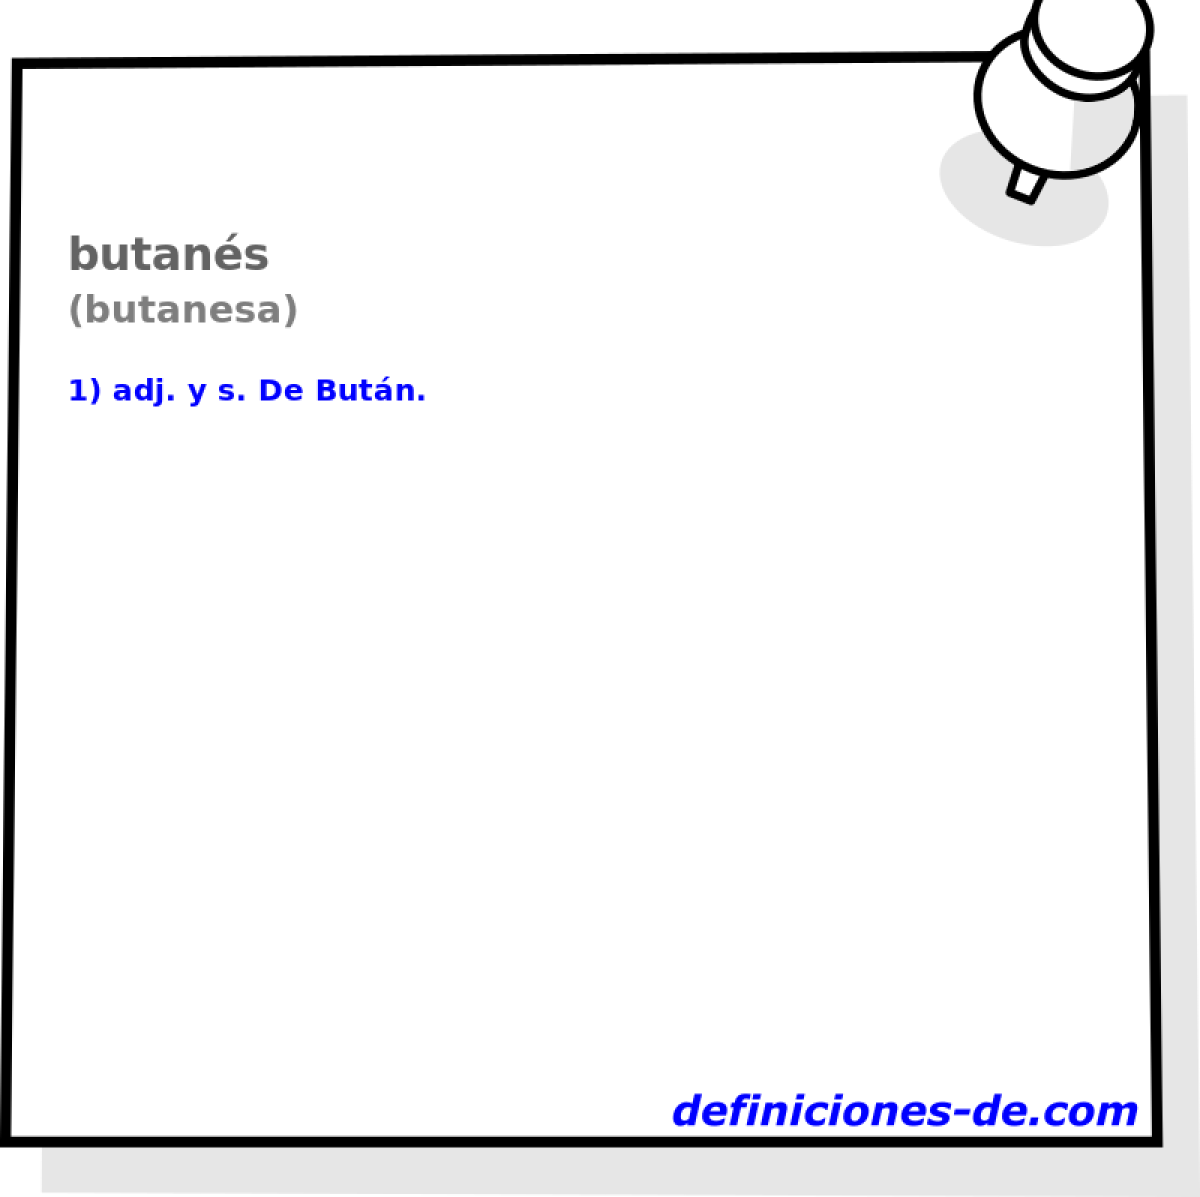 butans (butanesa)